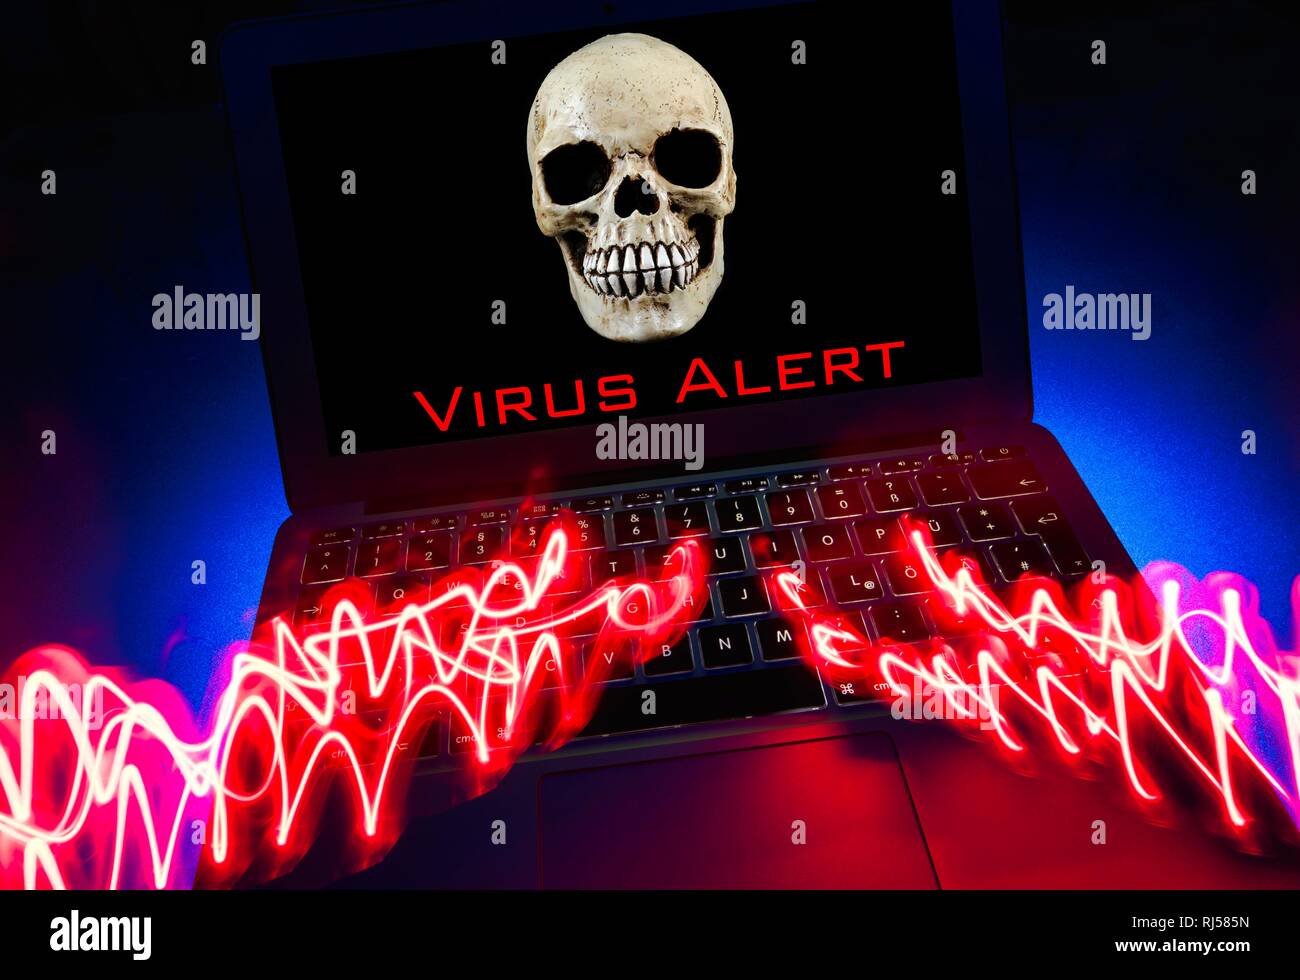 Laptop mit totenkopf und gekreuzten Knochen auf dem Bildschirm, das Symbol Bild malware, Virus Alarm, Computerkriminalität, Datenschutz, Deutschland Stockfoto